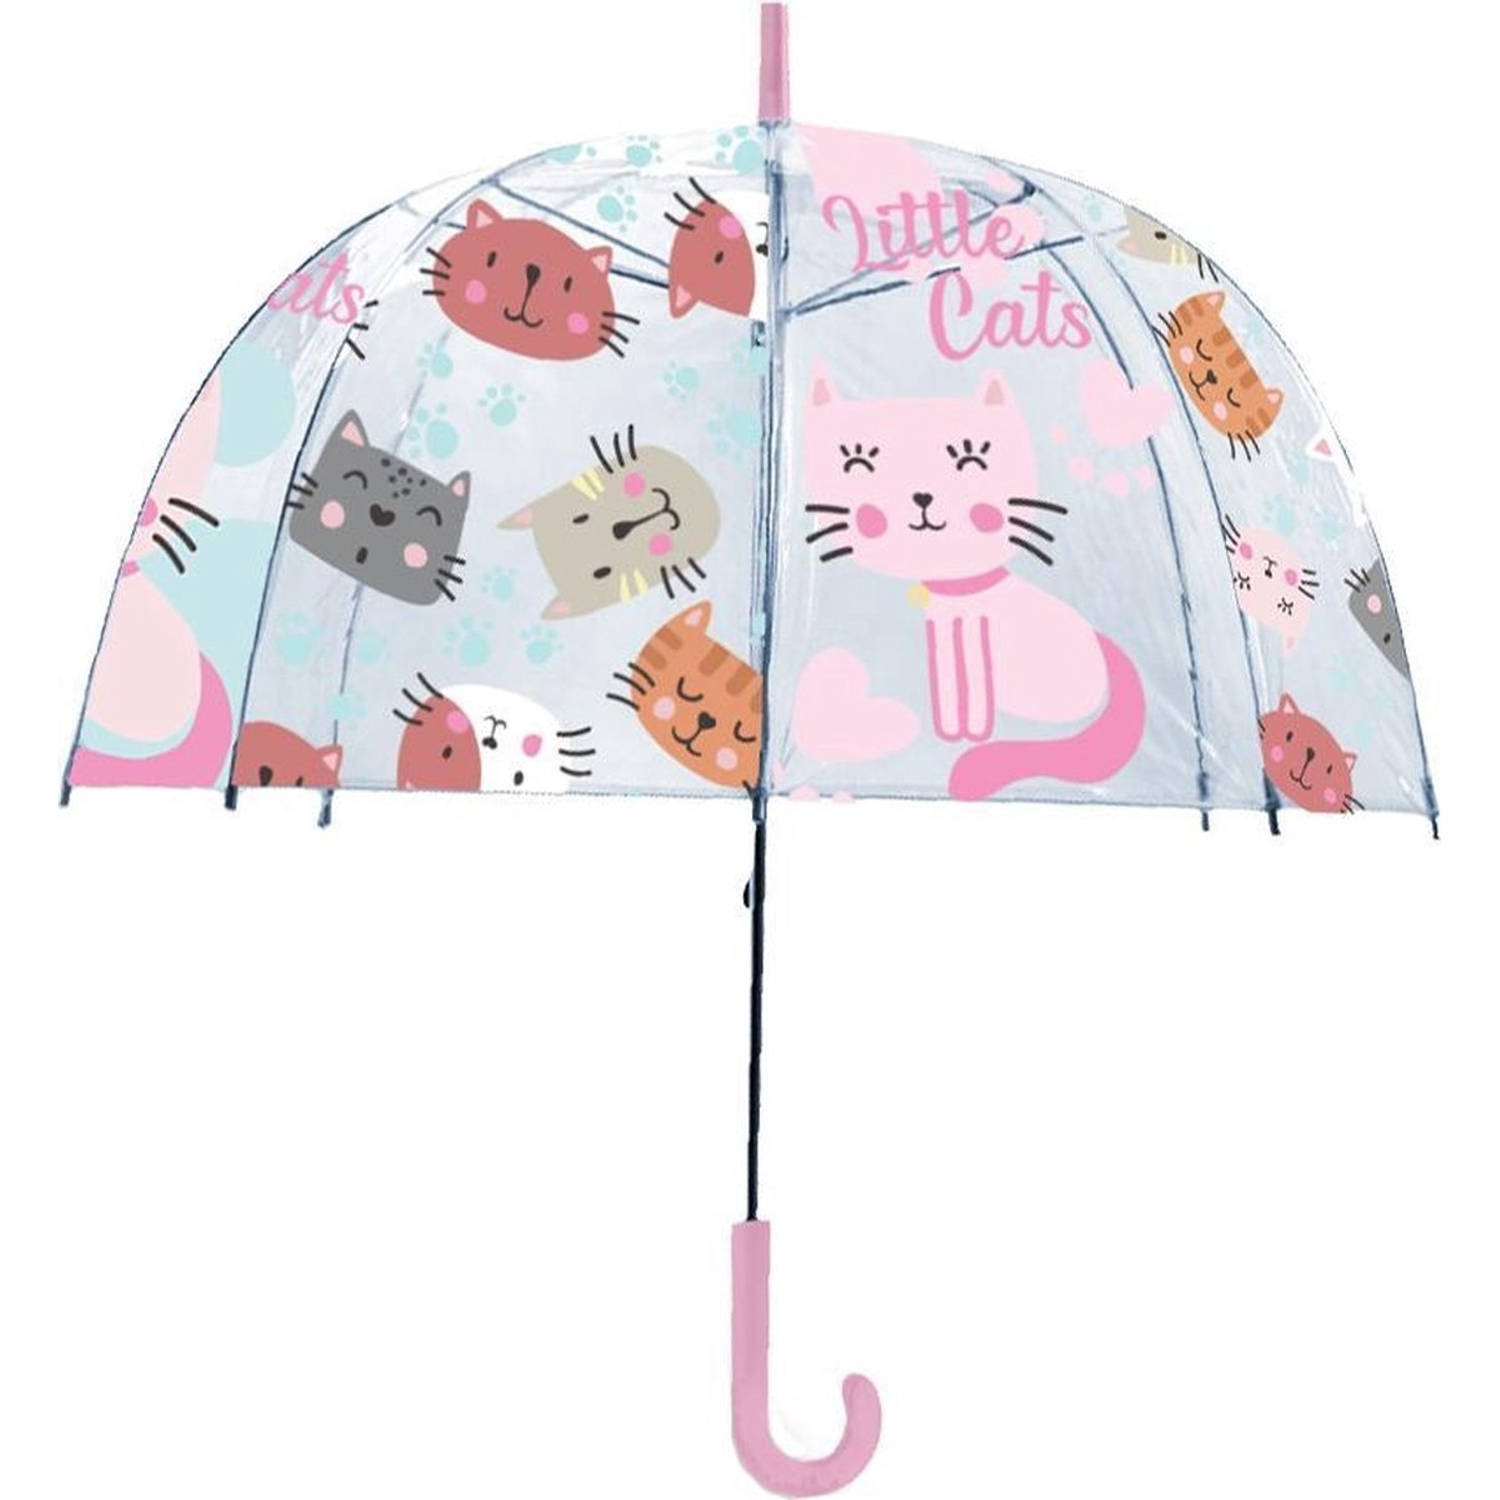 Kinderparaplu - Little cats - paraplu's - Paraplu - Paraplu kopen - Paraplu kind - - |